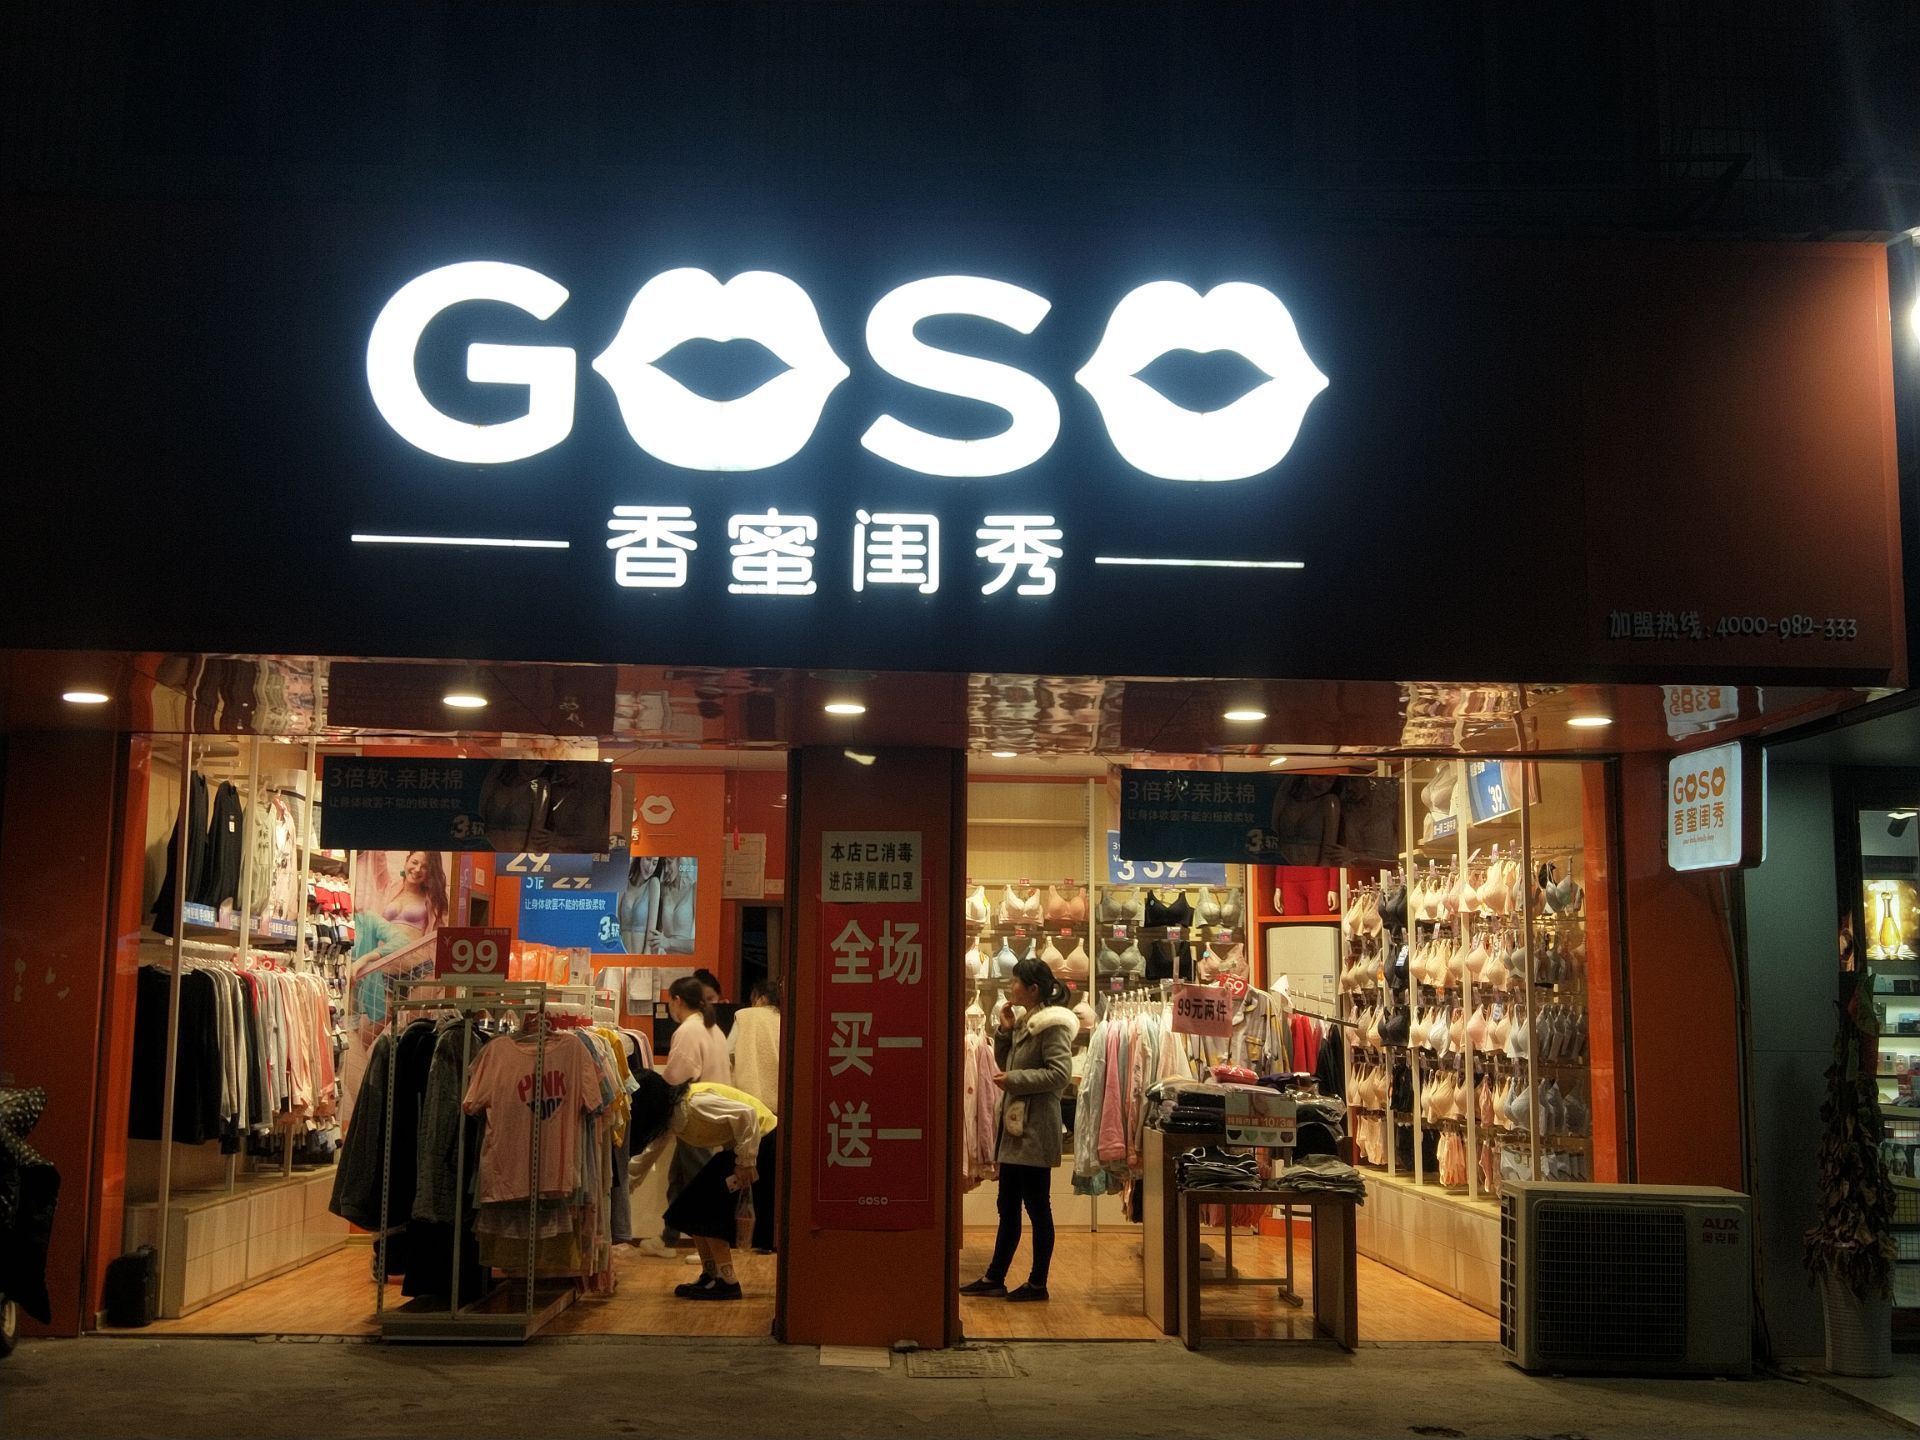 这家服装店名goso香蜜闺秀店门头上面有几个两个英文字母加上两个嘴型